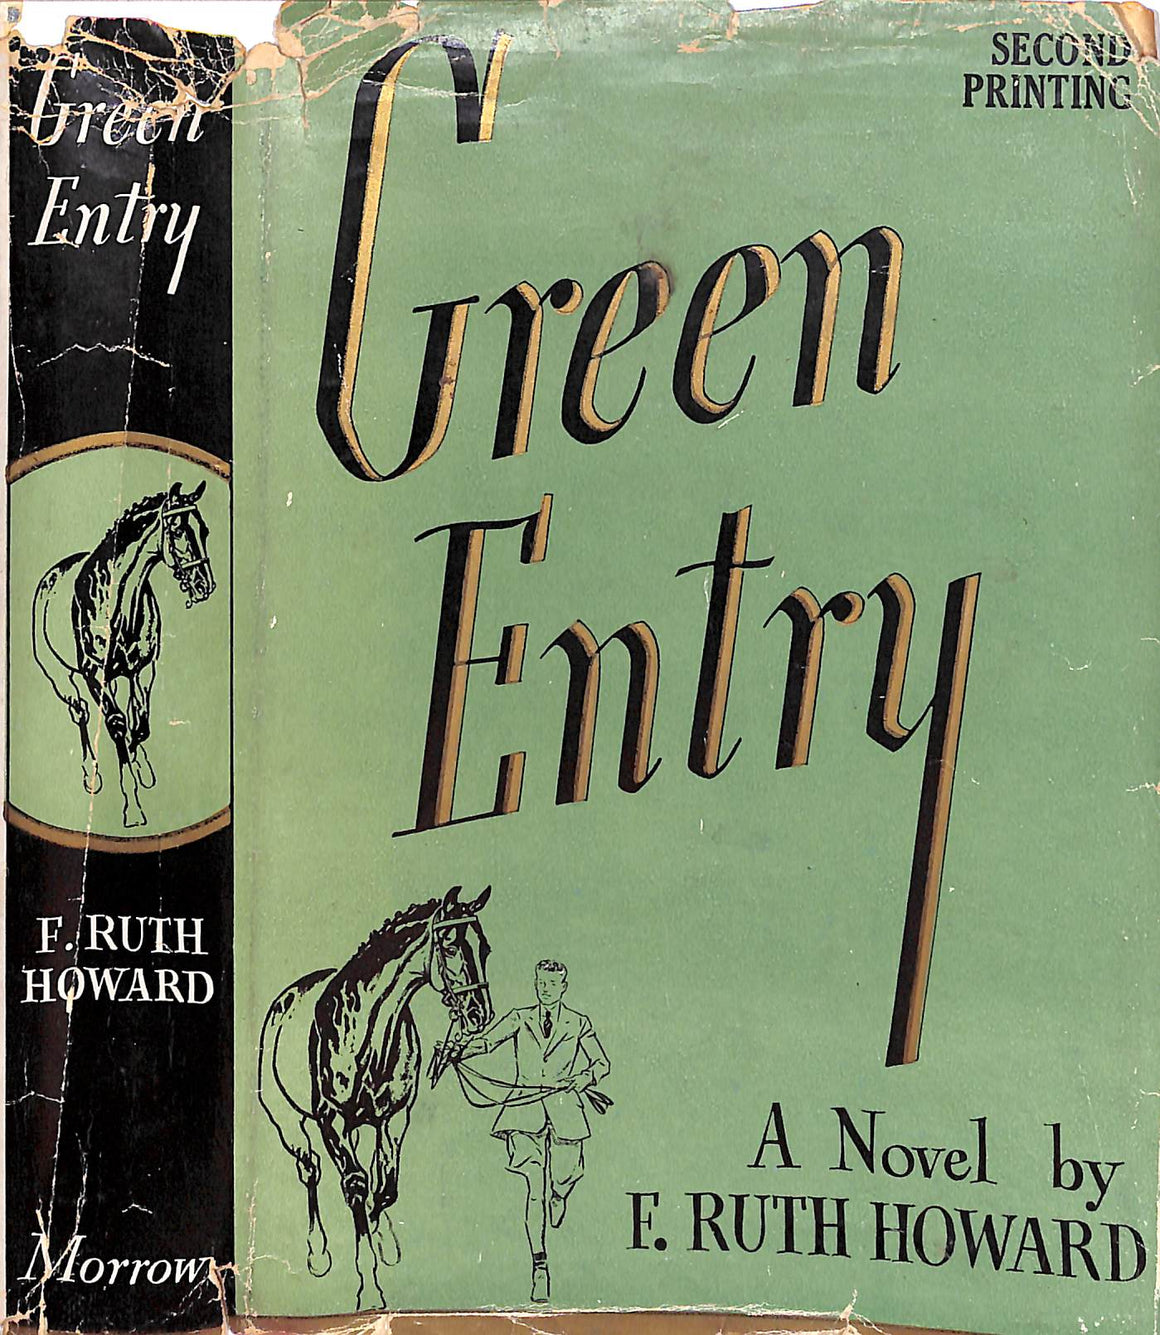 "Green Entry" 1940 HOWARD, F. Ruth